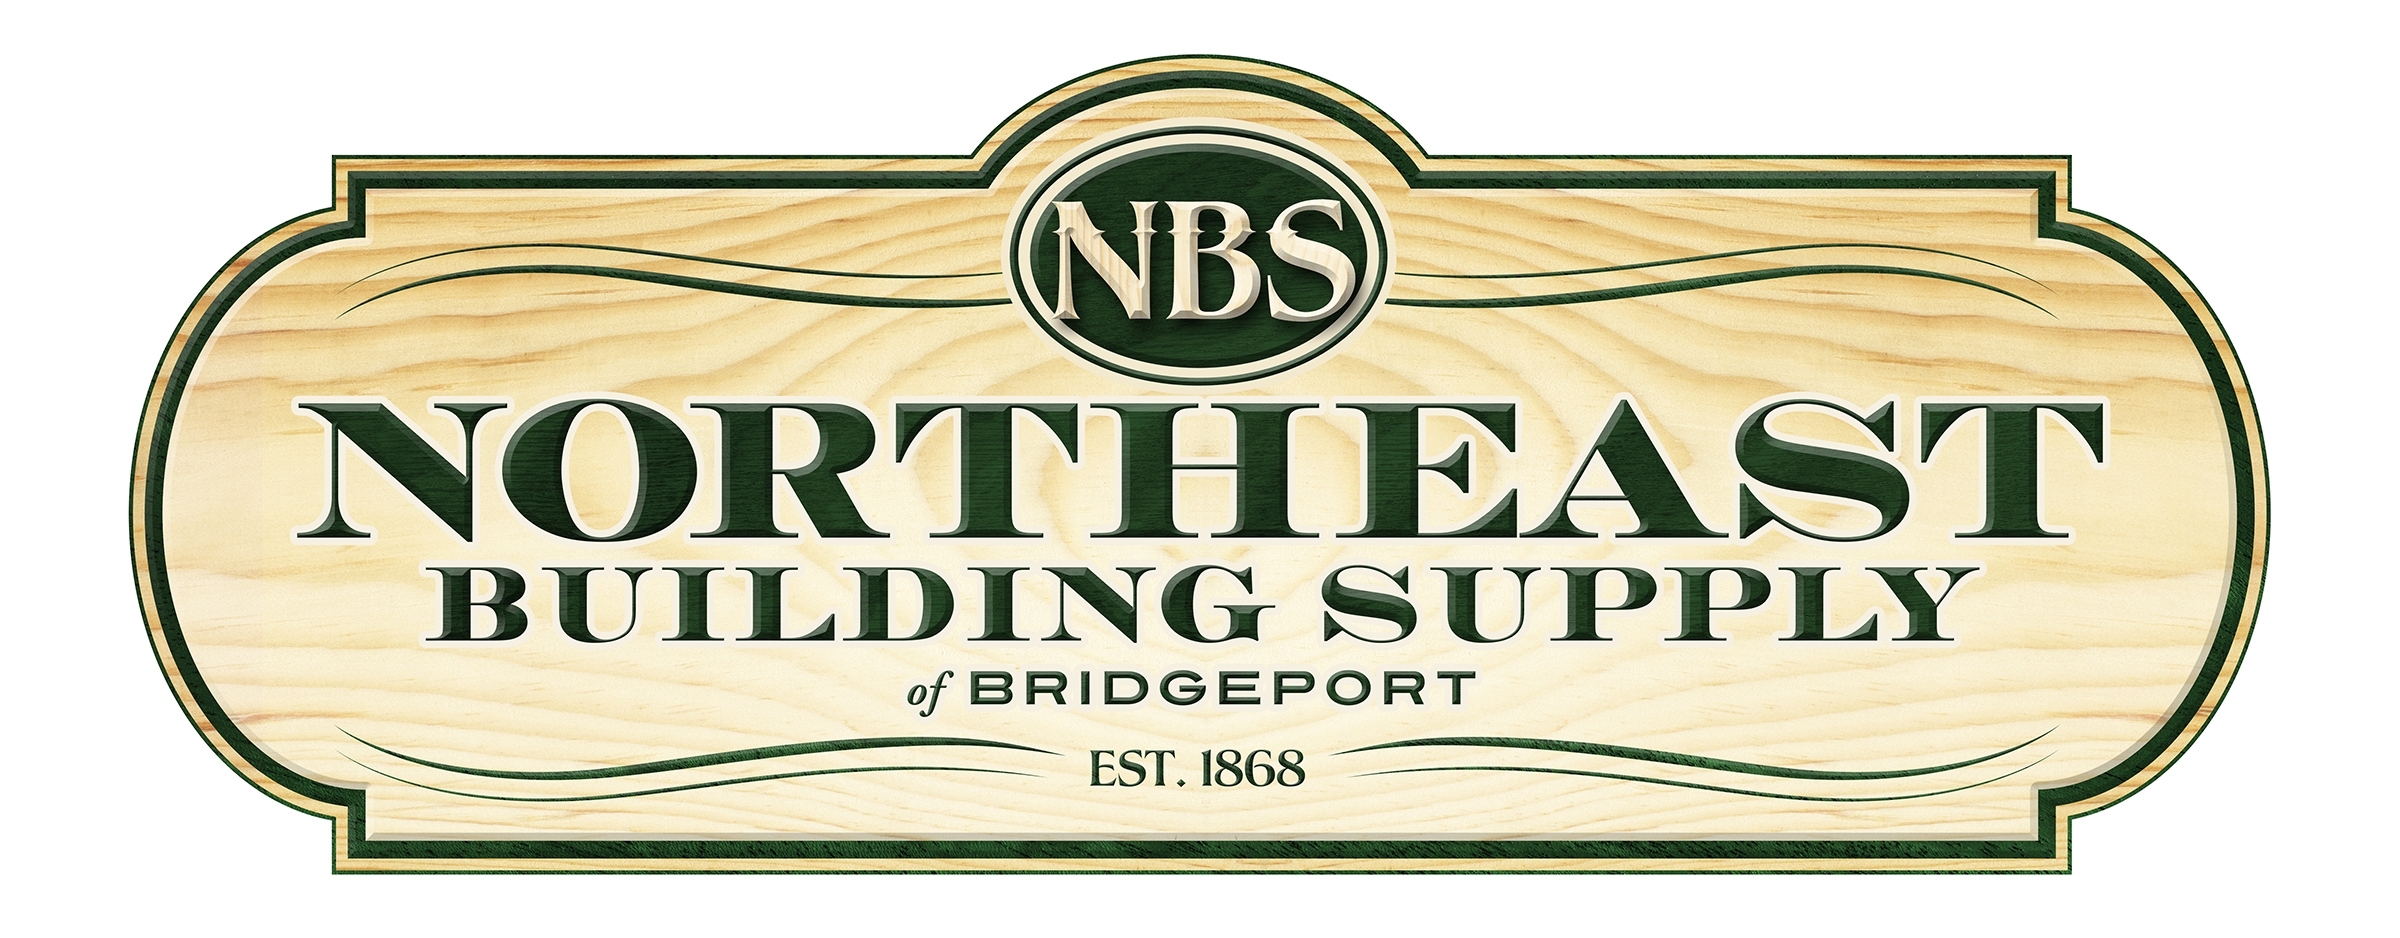 Bridgeport Lumber Northeast Building Supply logo